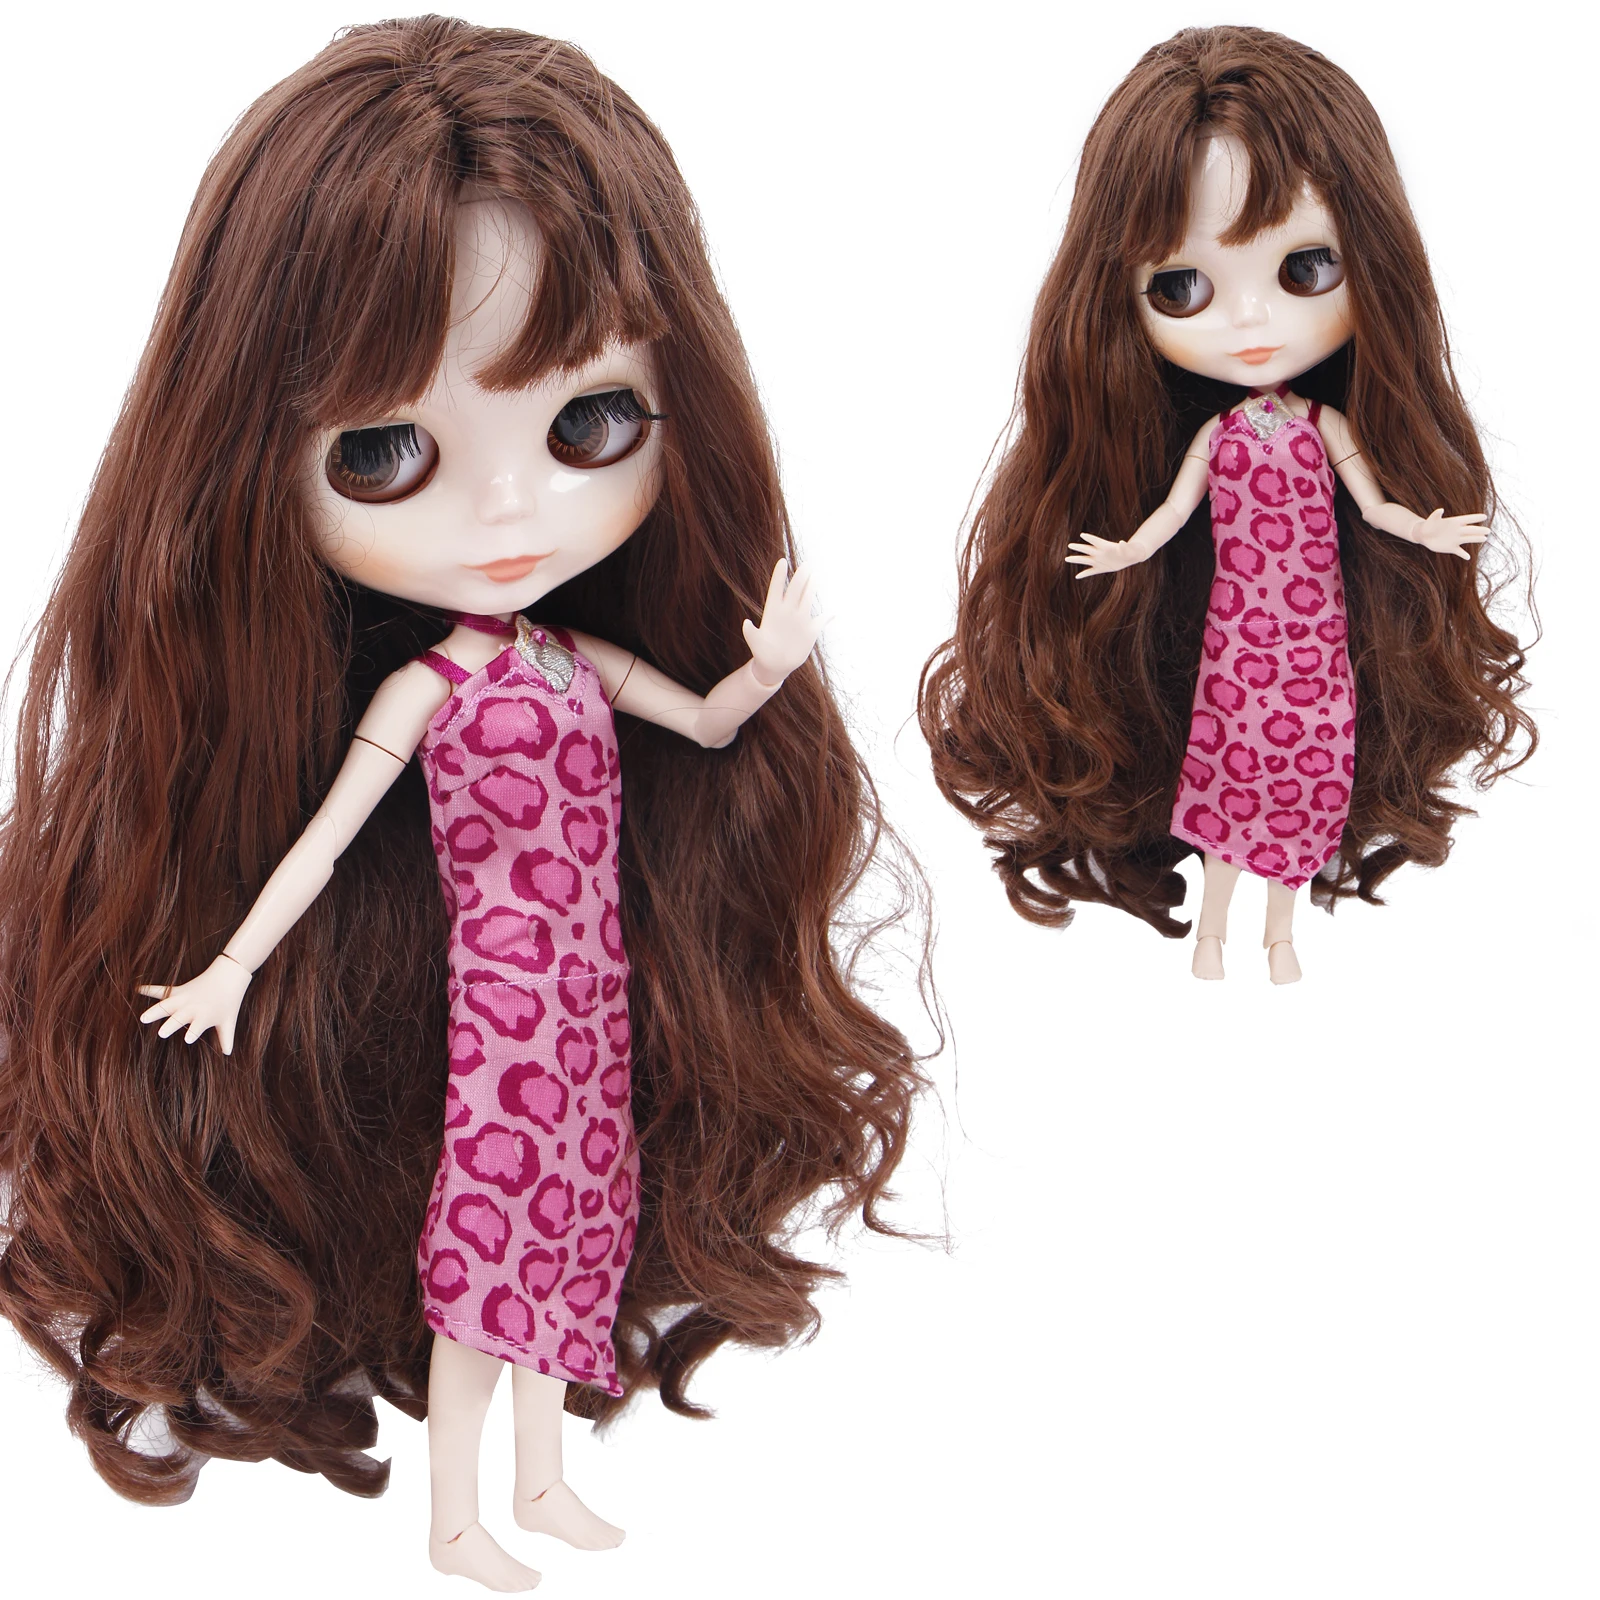 1 комплект, Модный милый розовый Леопардовый принт, платье-комбинация вечерние платья, кукольная одежда, кукла блайз, 11,5 дюйма, детская игрушка